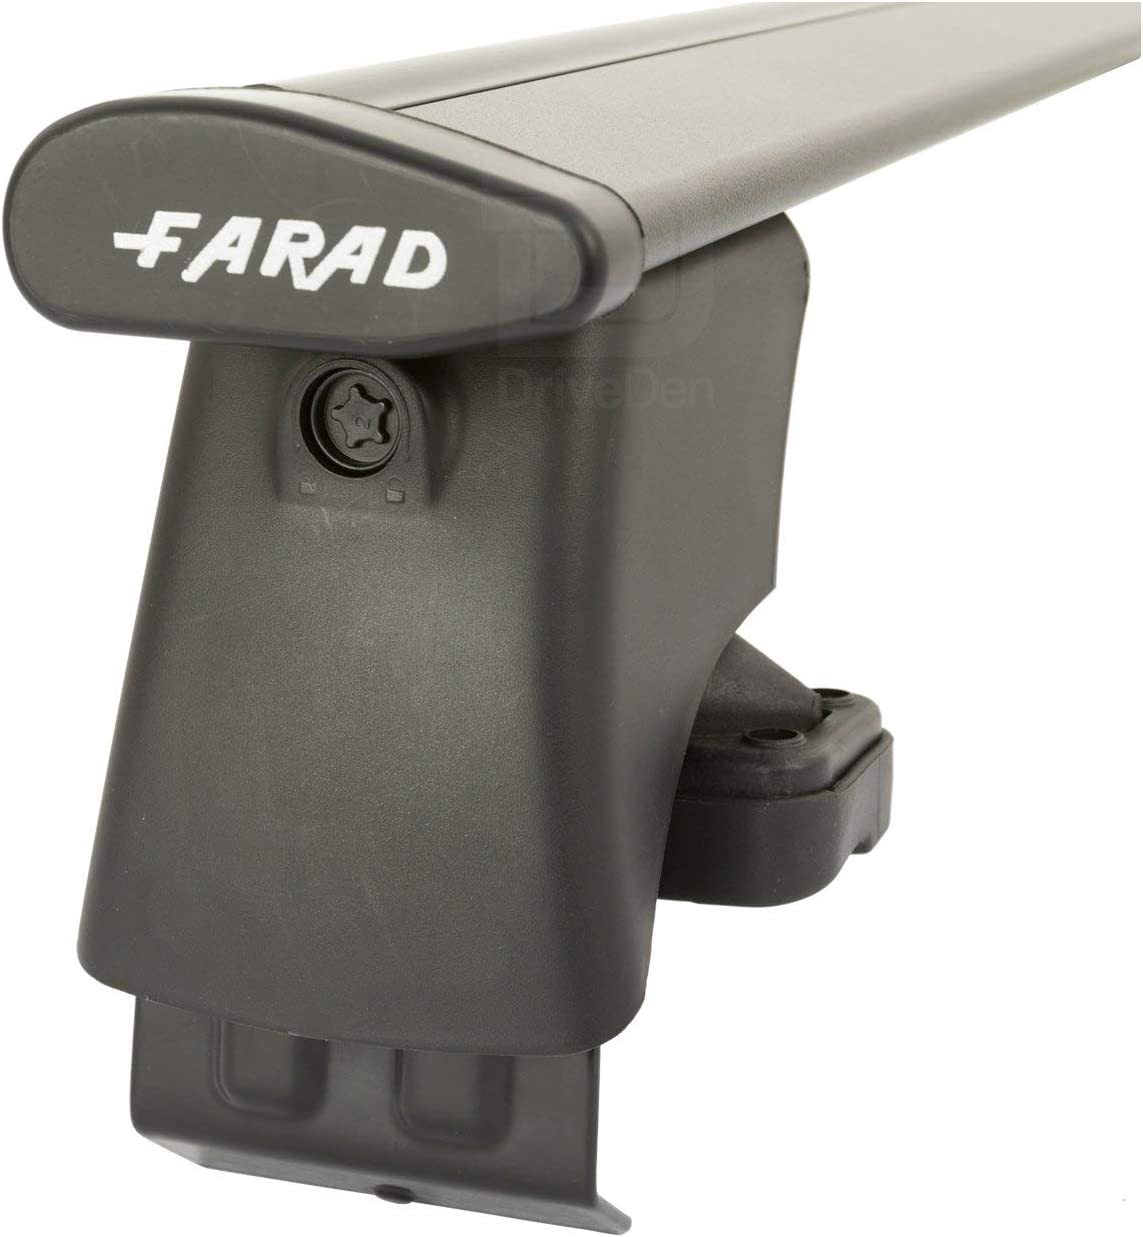 FARAD-Kit H2 per barre portatutto - Citroen C3 2002-2009 (senza corrimano)